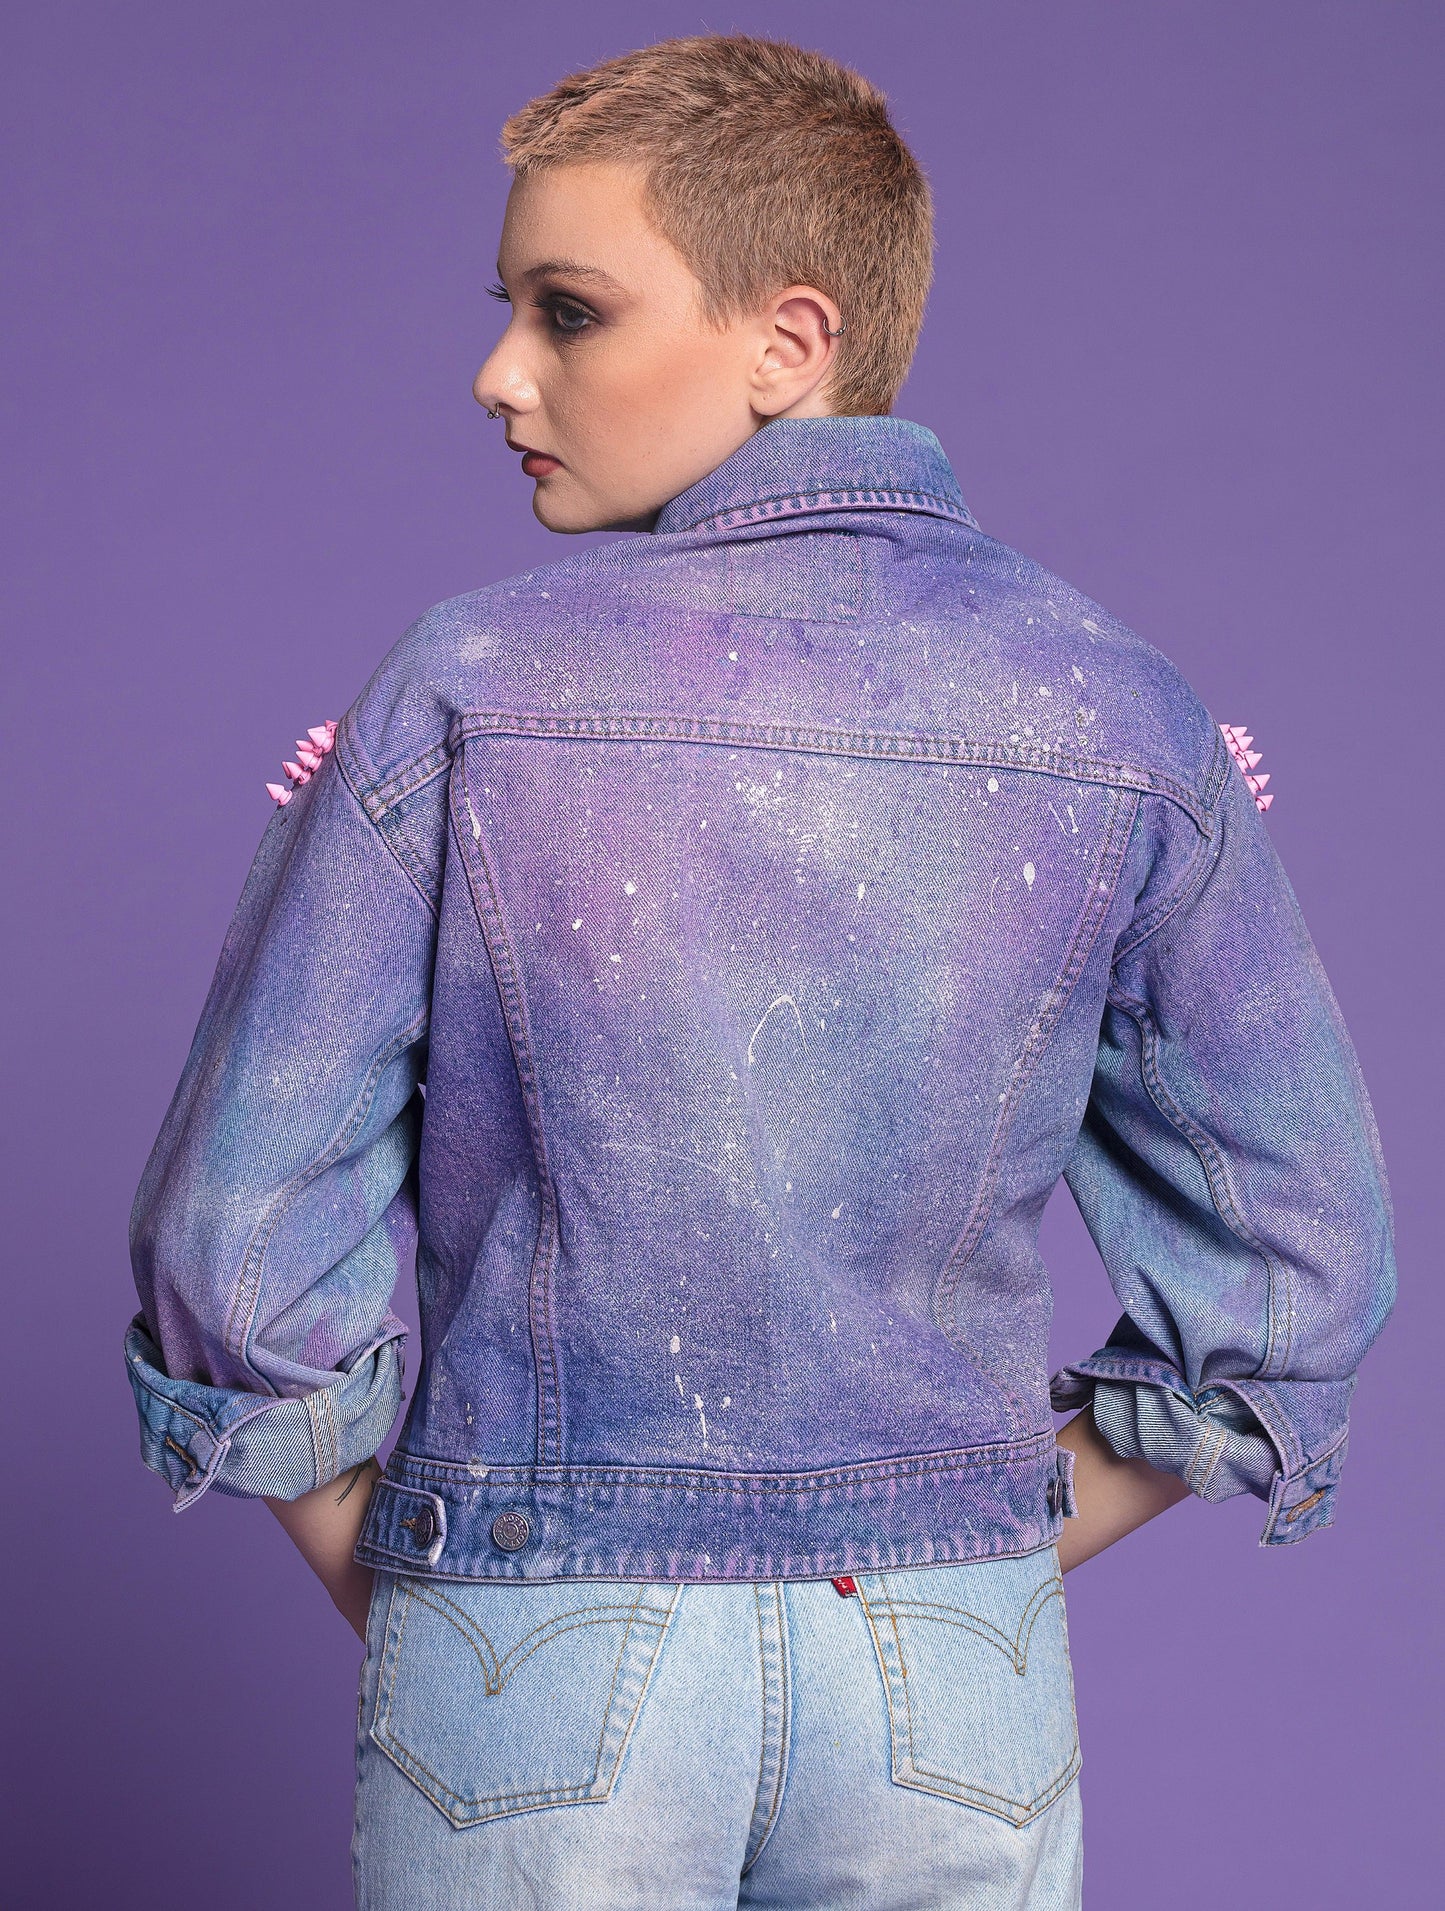 Blue nebula galaxy studded denim jacket  | Unisex